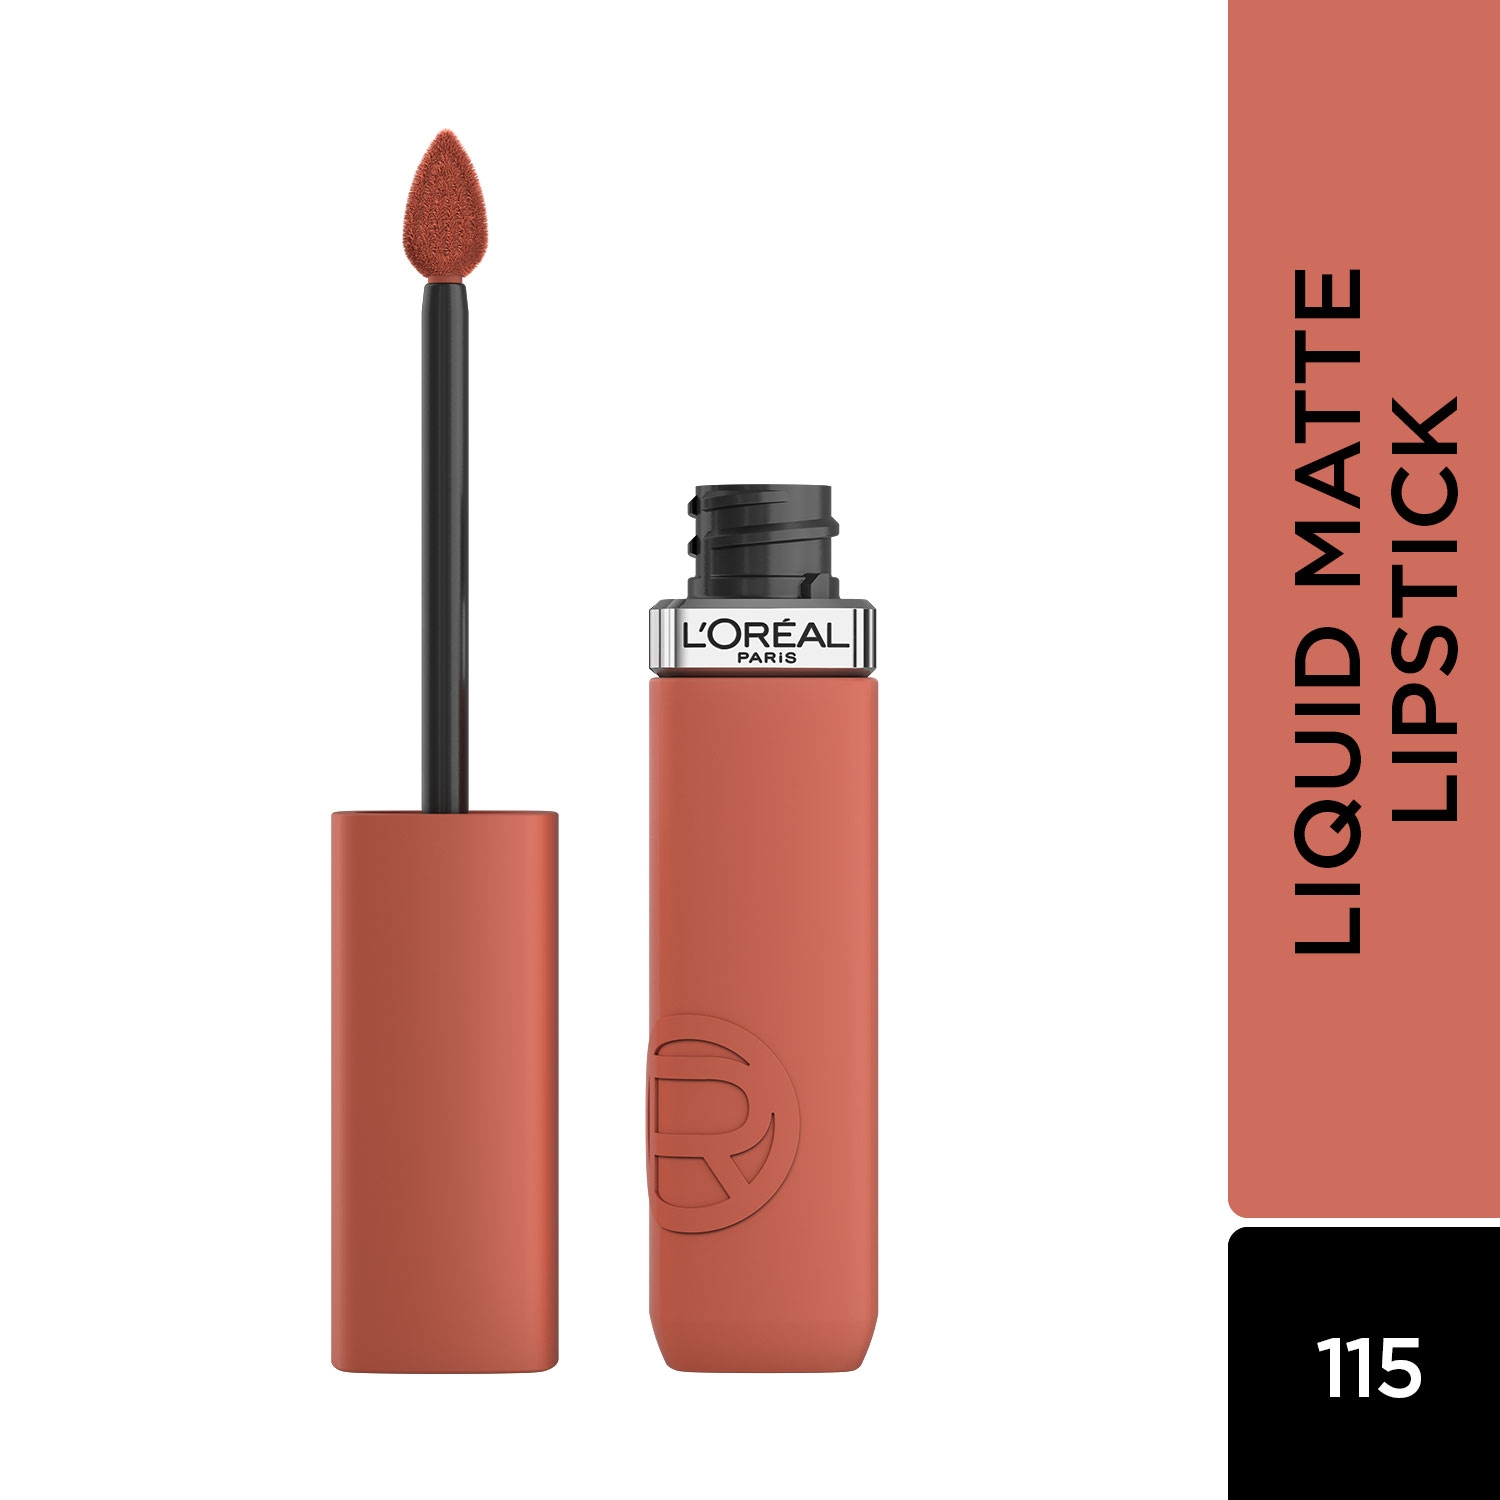 L'Oreal Paris | L'Oreal Paris Infallible Matte Resistance Liquid Lipstick - 115 Snooze Your Alarm (5ml)